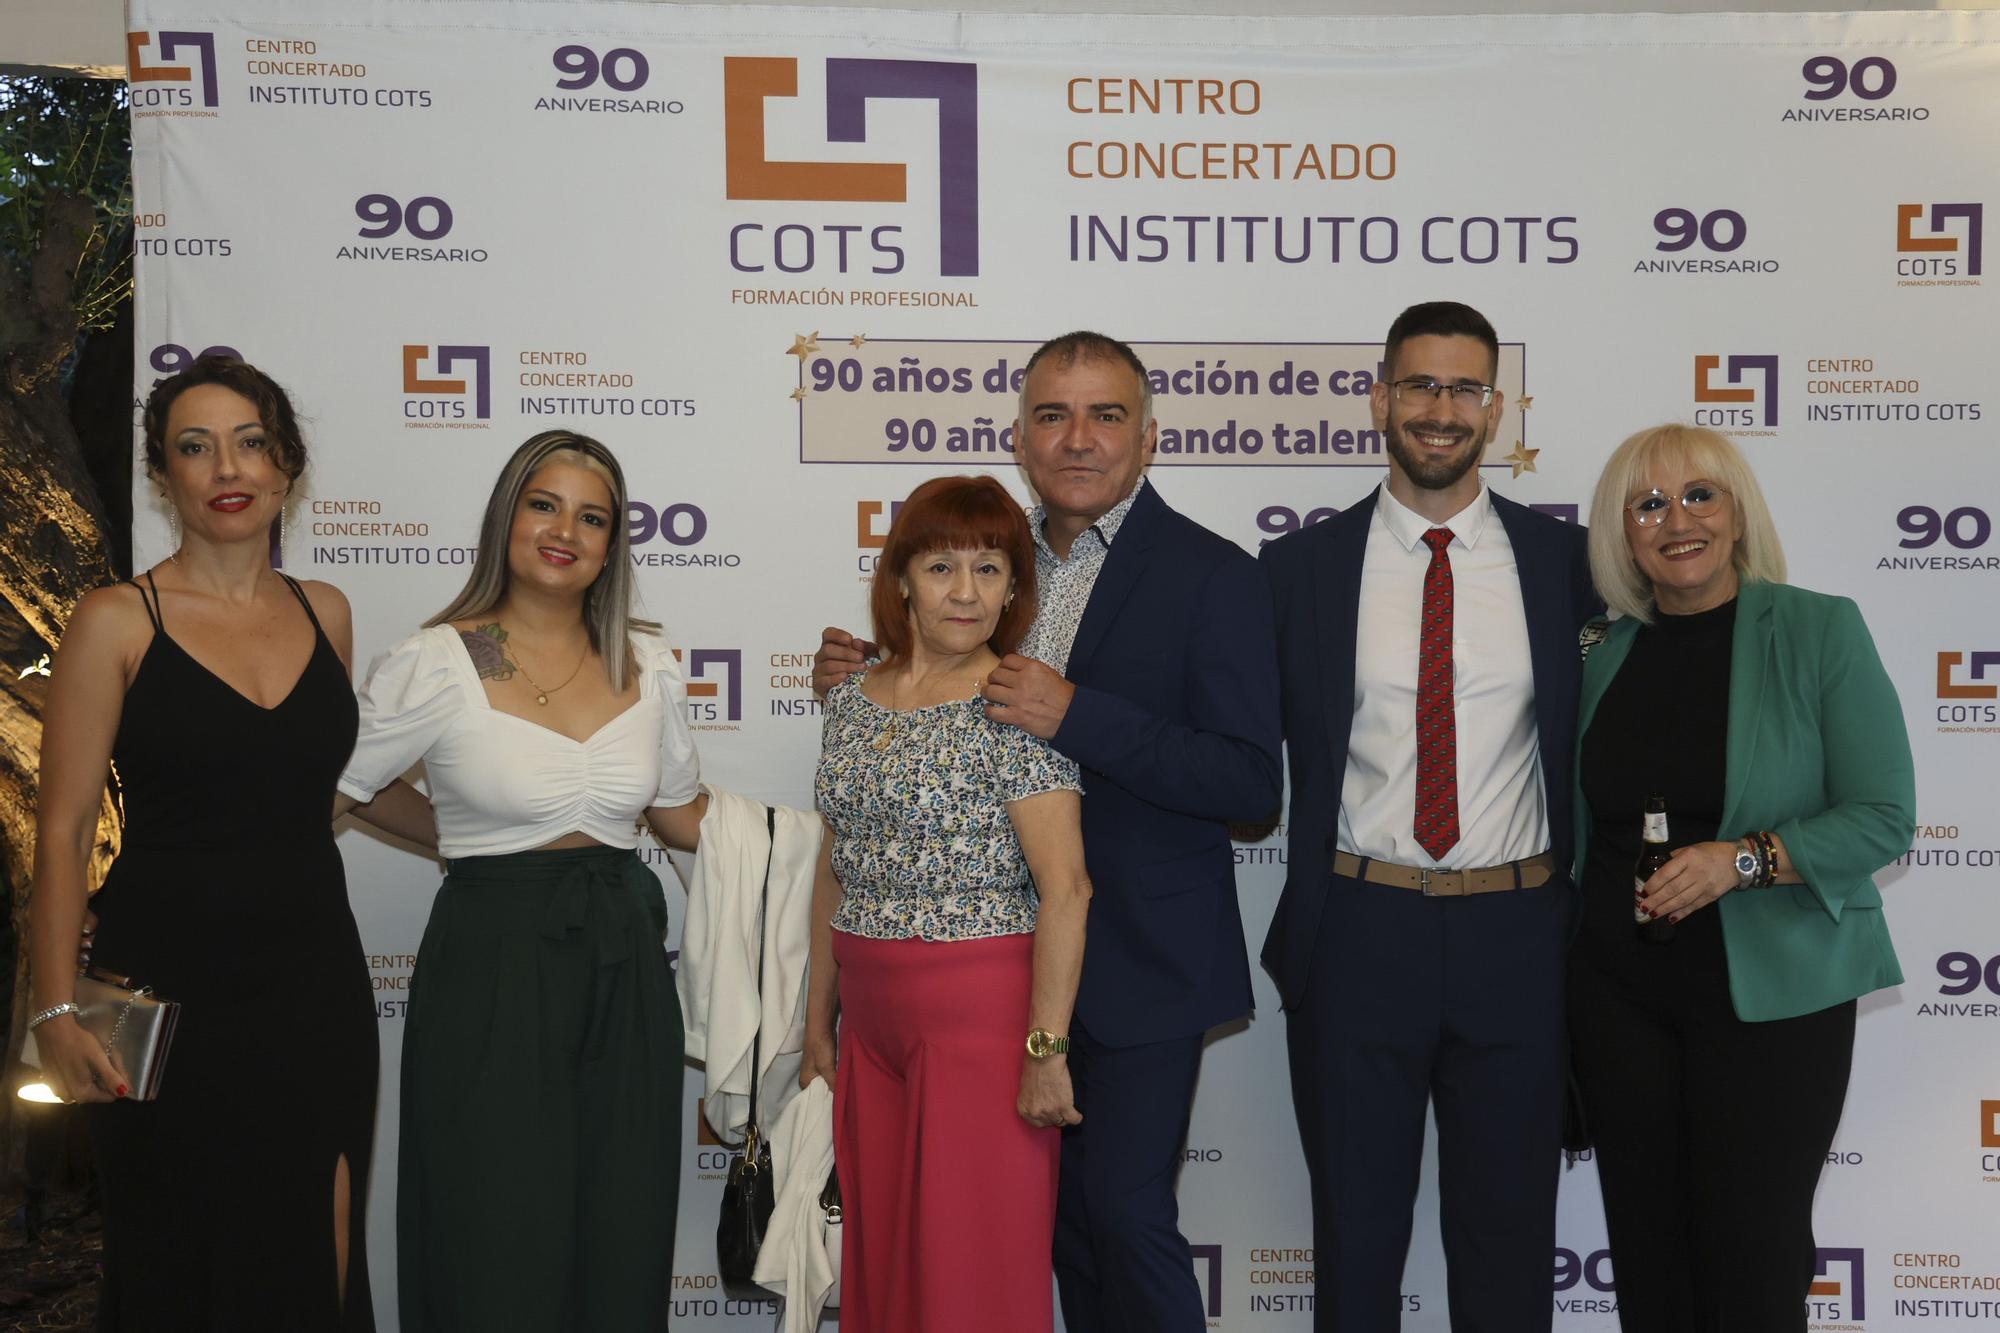 90 aniversario Instituto Cots